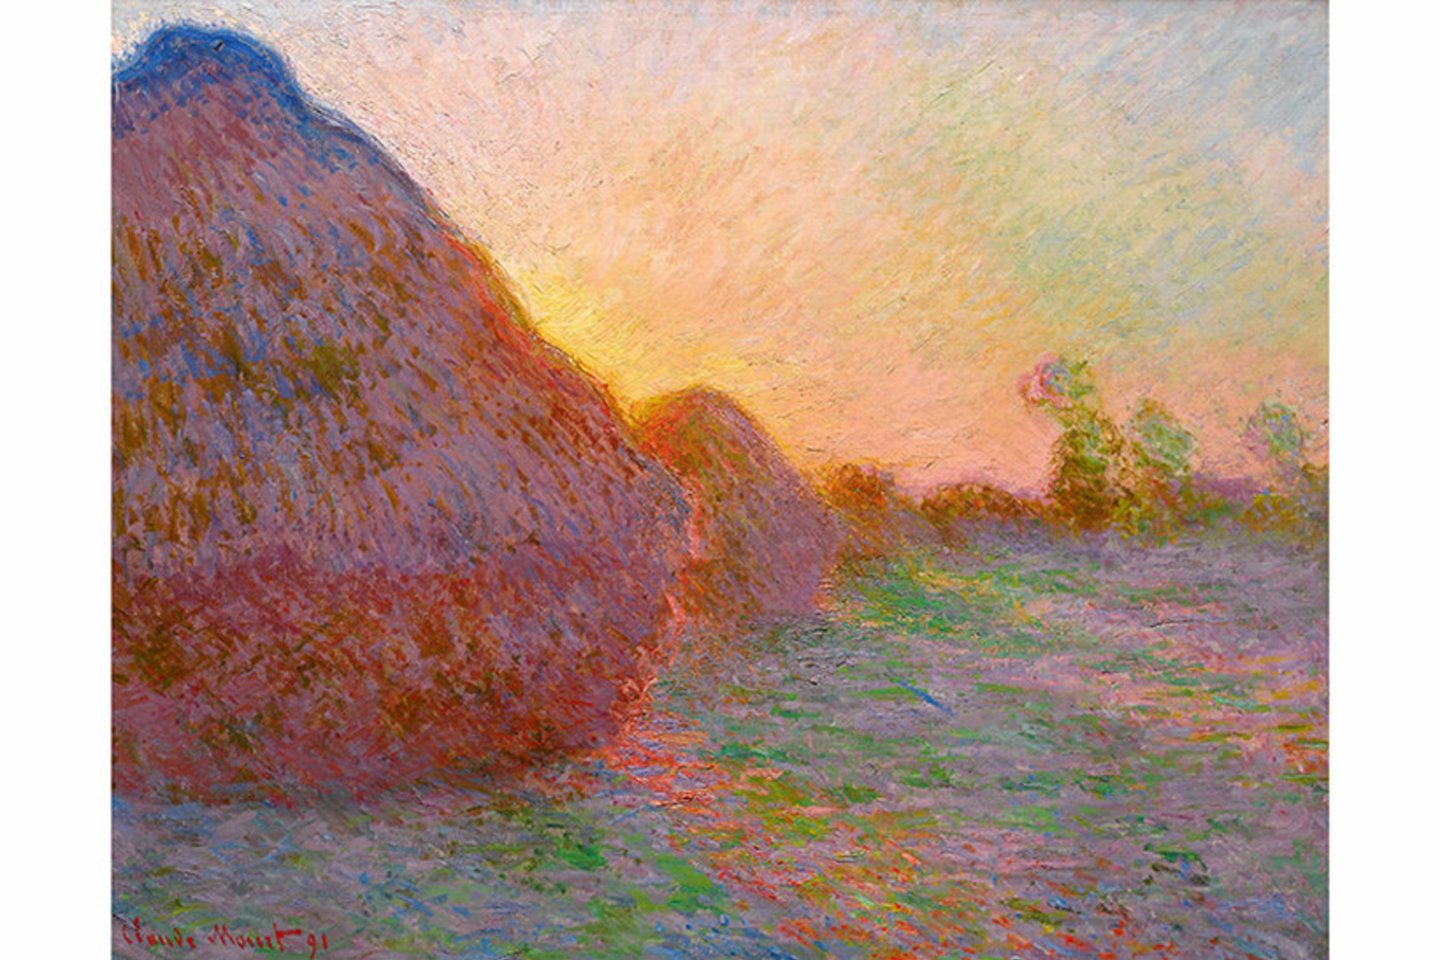  Claude Monet paveikslas iš ciklo „Šieno kupetos“ (Meules).<br> Sotheby’s nuotr.